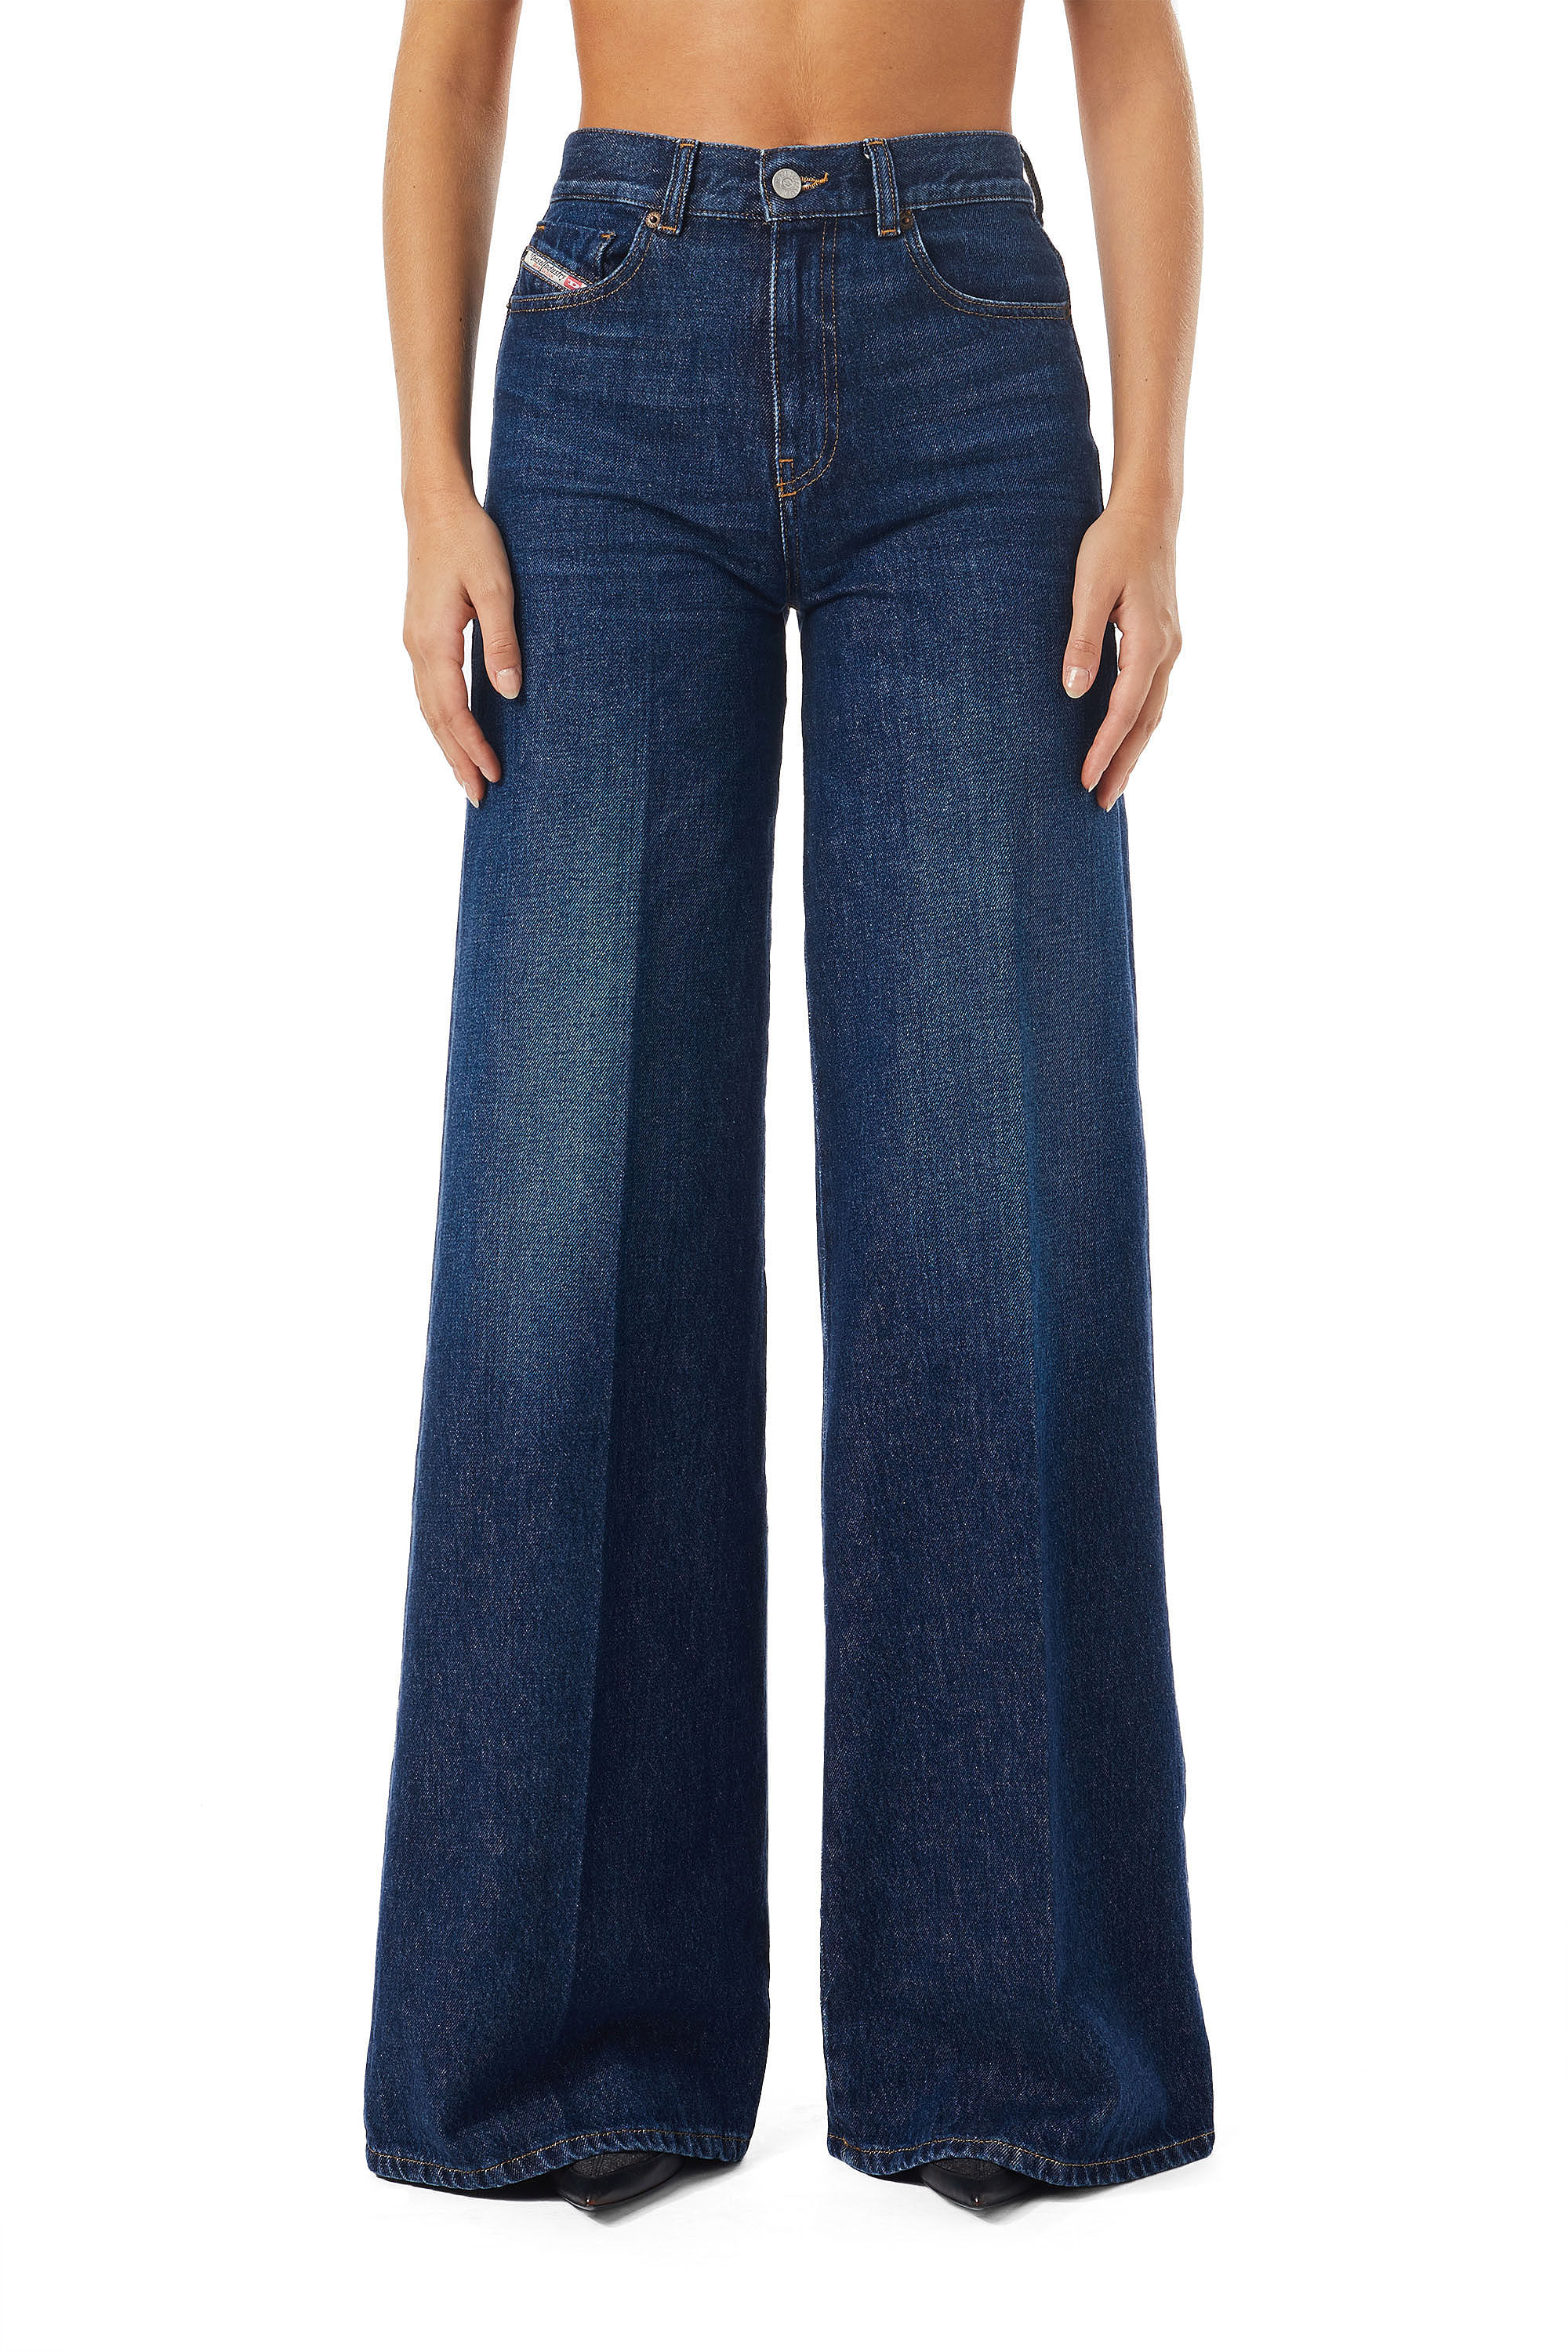 Ropa de Trabajo - Ropa de trabajo para mujer. Estos pantalones son  confeccionados en tela jean strech, sin cinta reflectiva. Whatsapp  0996313436